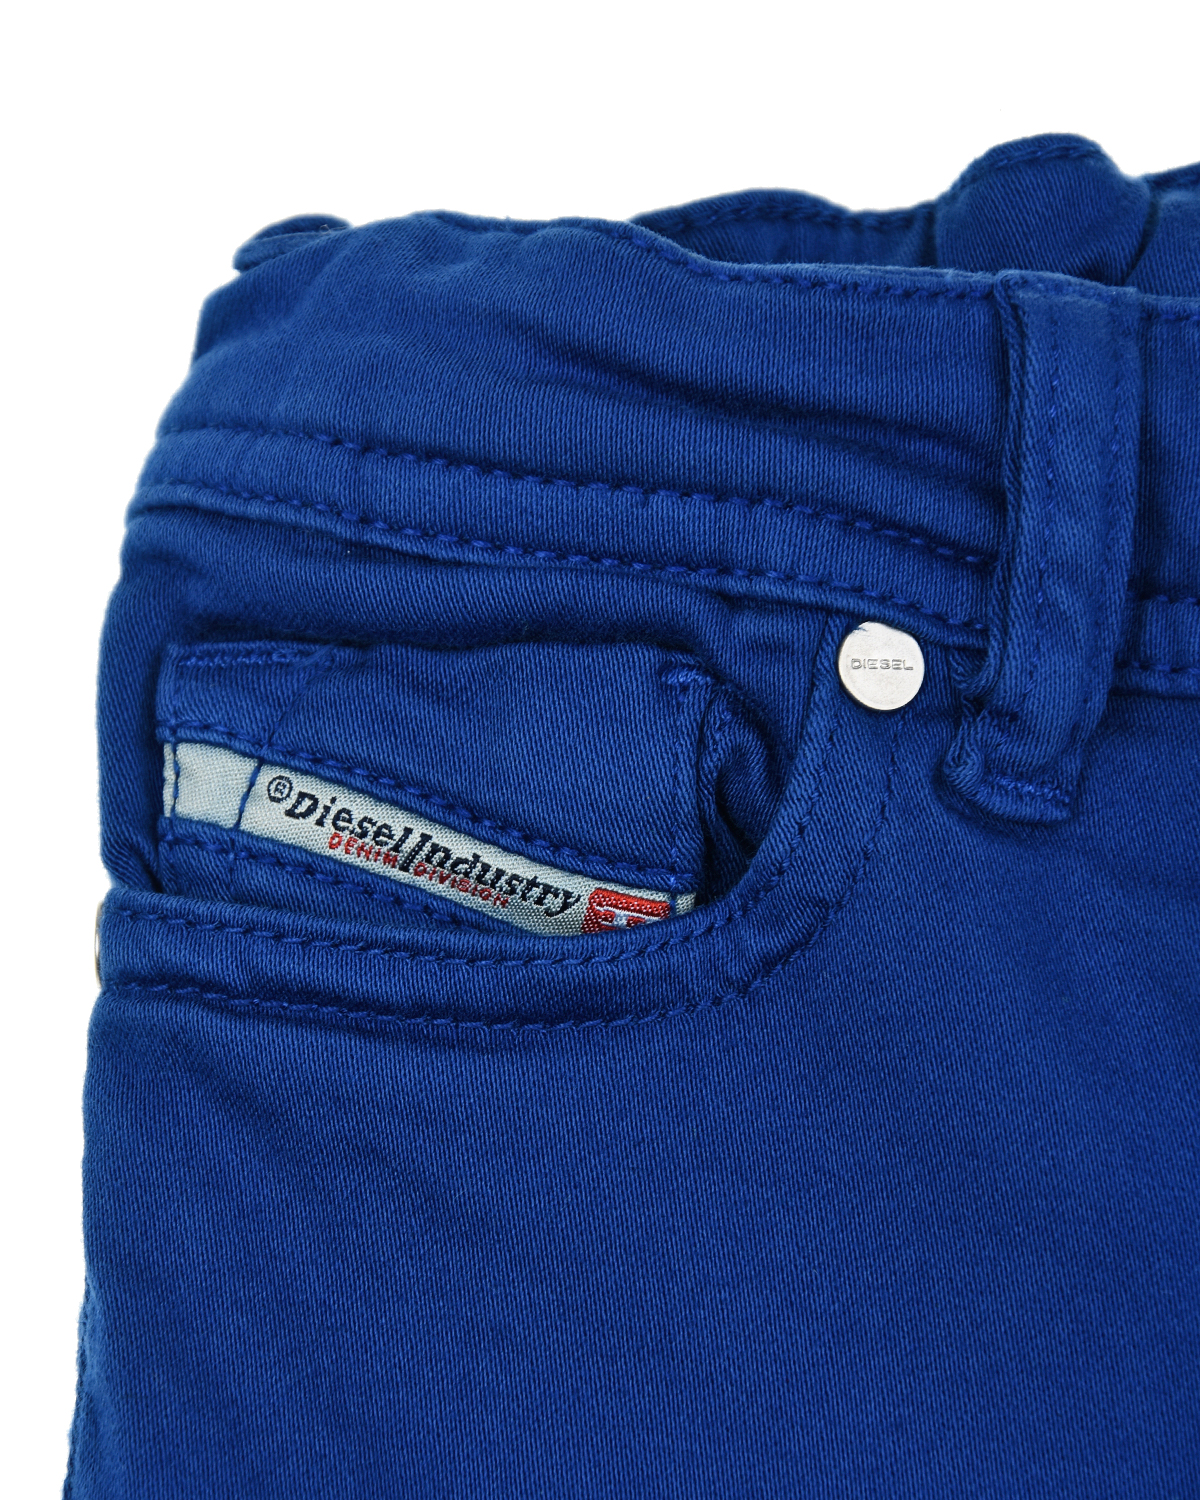 Синие джинсовые джоггеры Diesel детские, размер 80, цвет синий - фото 3